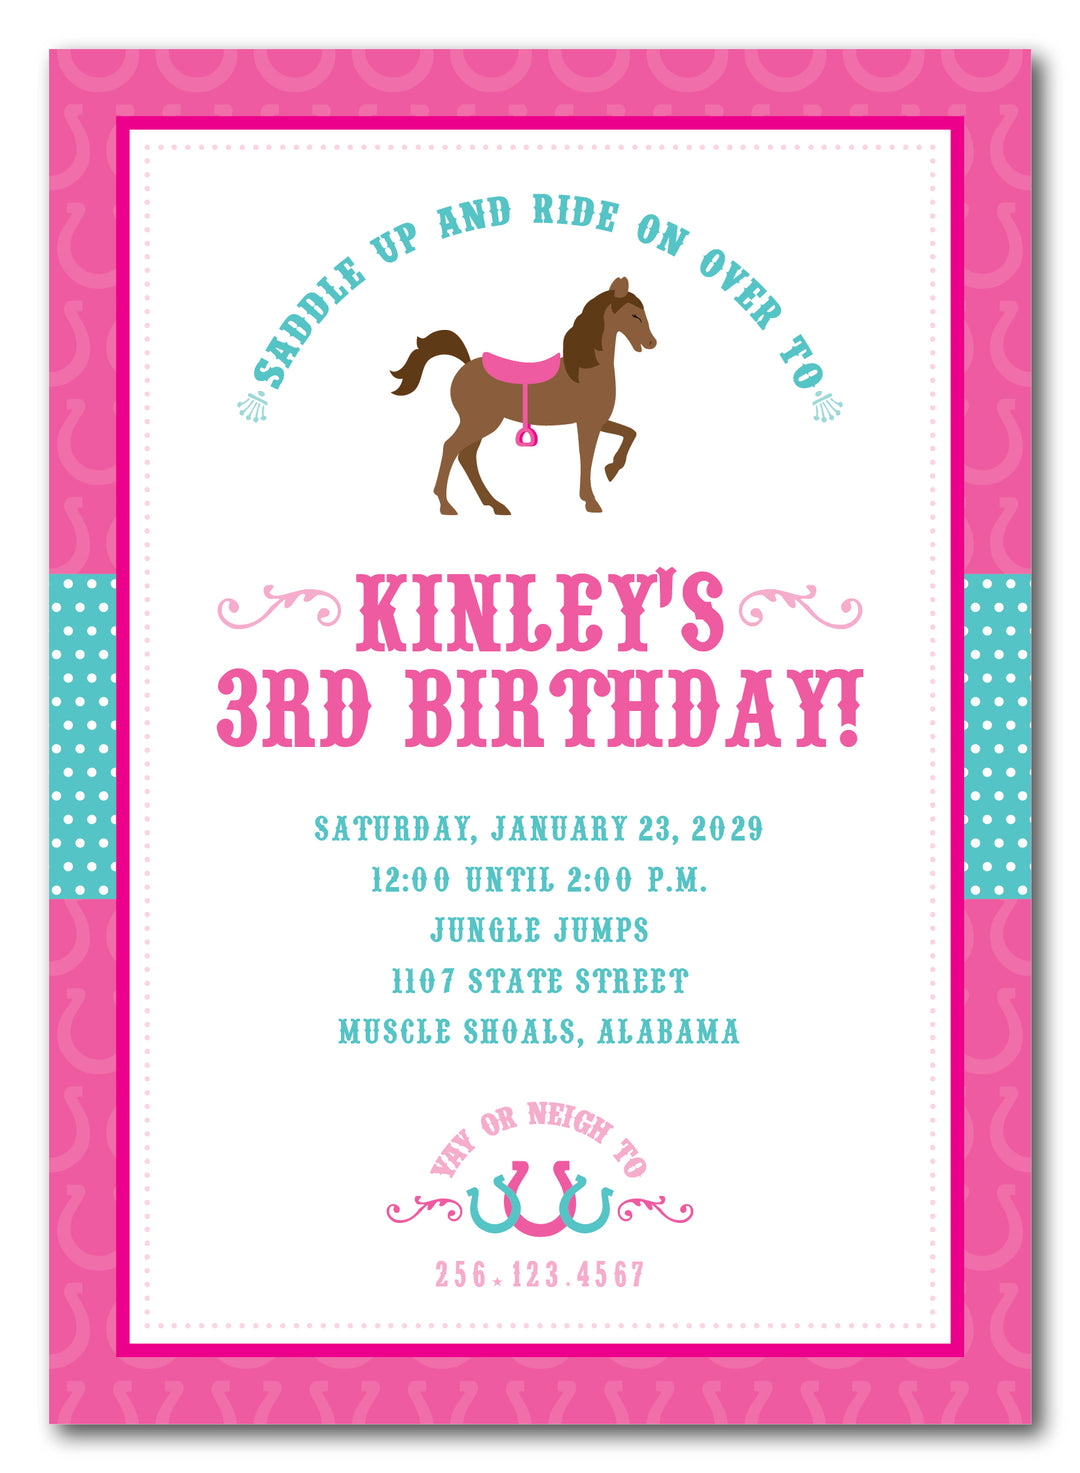 The Horse Birthday Party Invitation